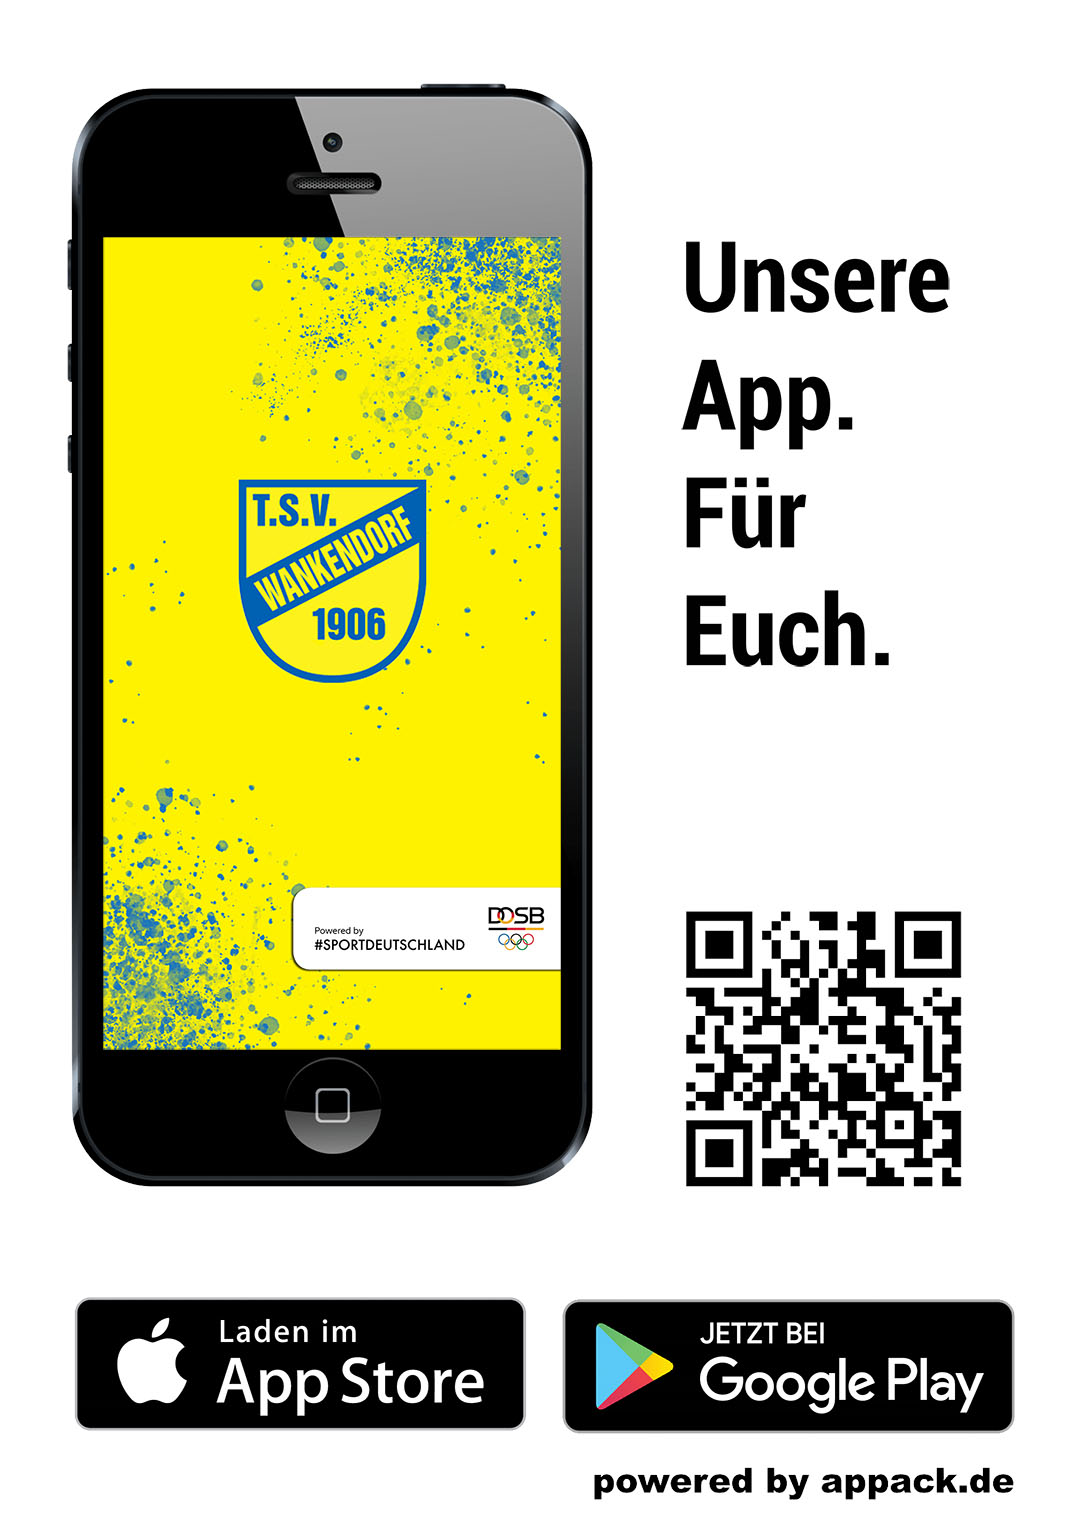 tsv-wankendorf-app